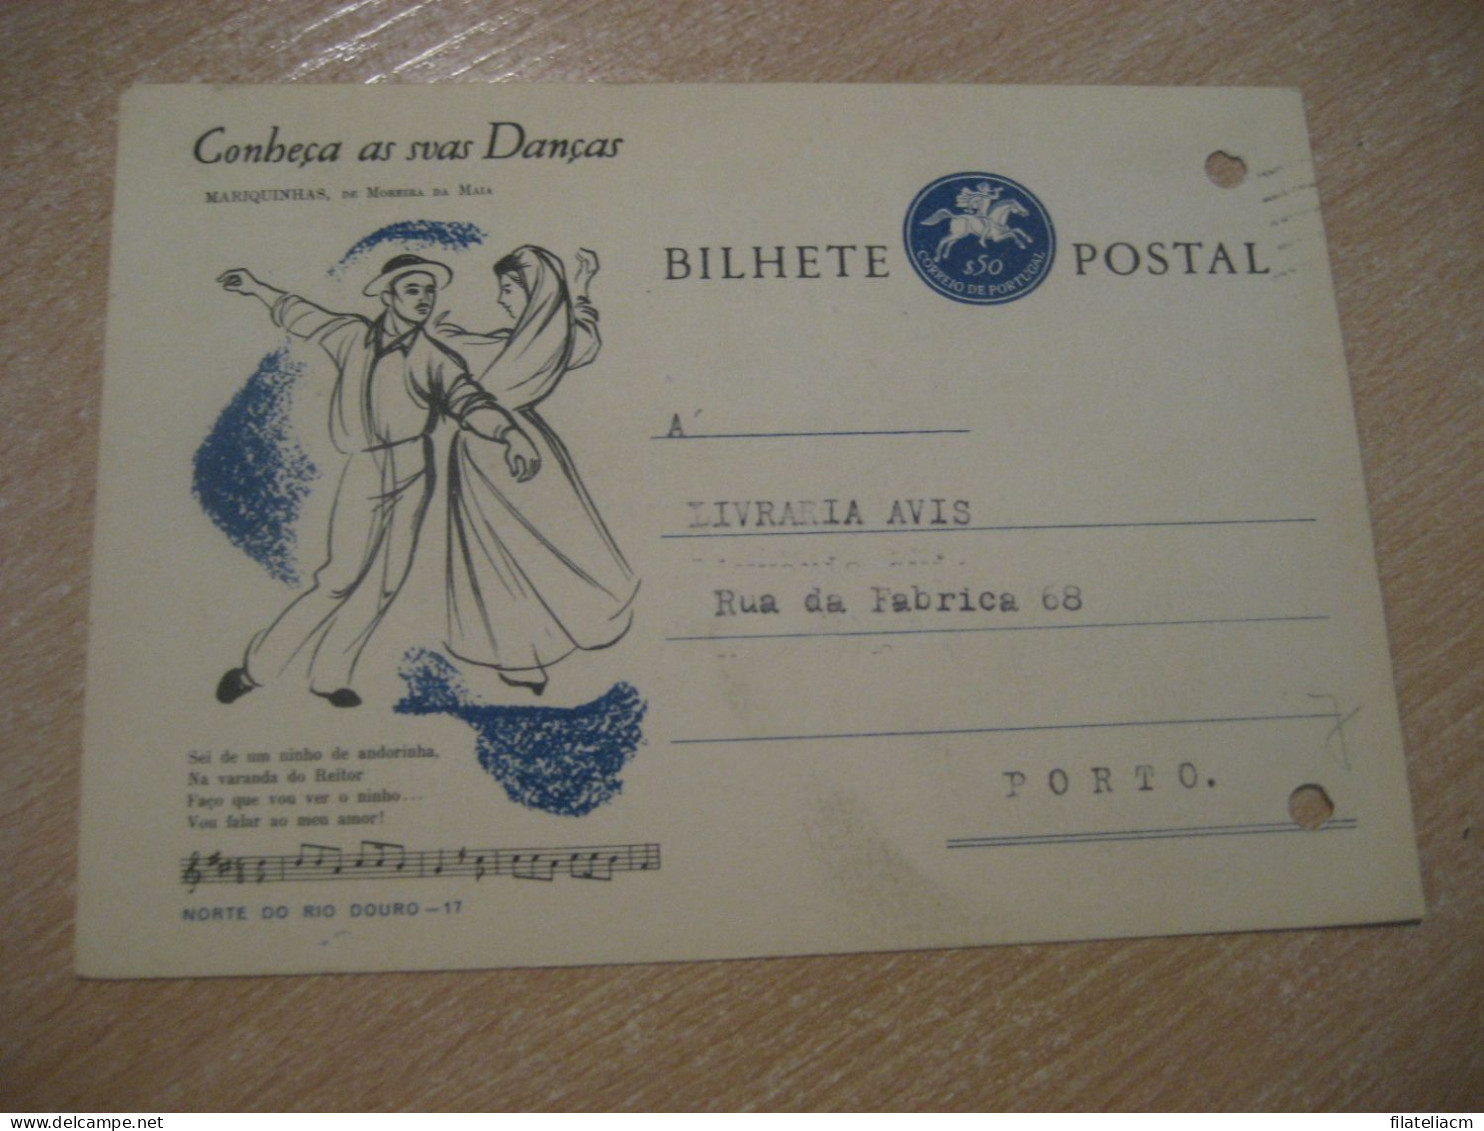 CASTELO BRANCO 1964 To Porto Conheça As Suas Danças Mariquinhas De Moreira Da Maia Bilhete Postal Stationery PORTUGAL - Cartas & Documentos